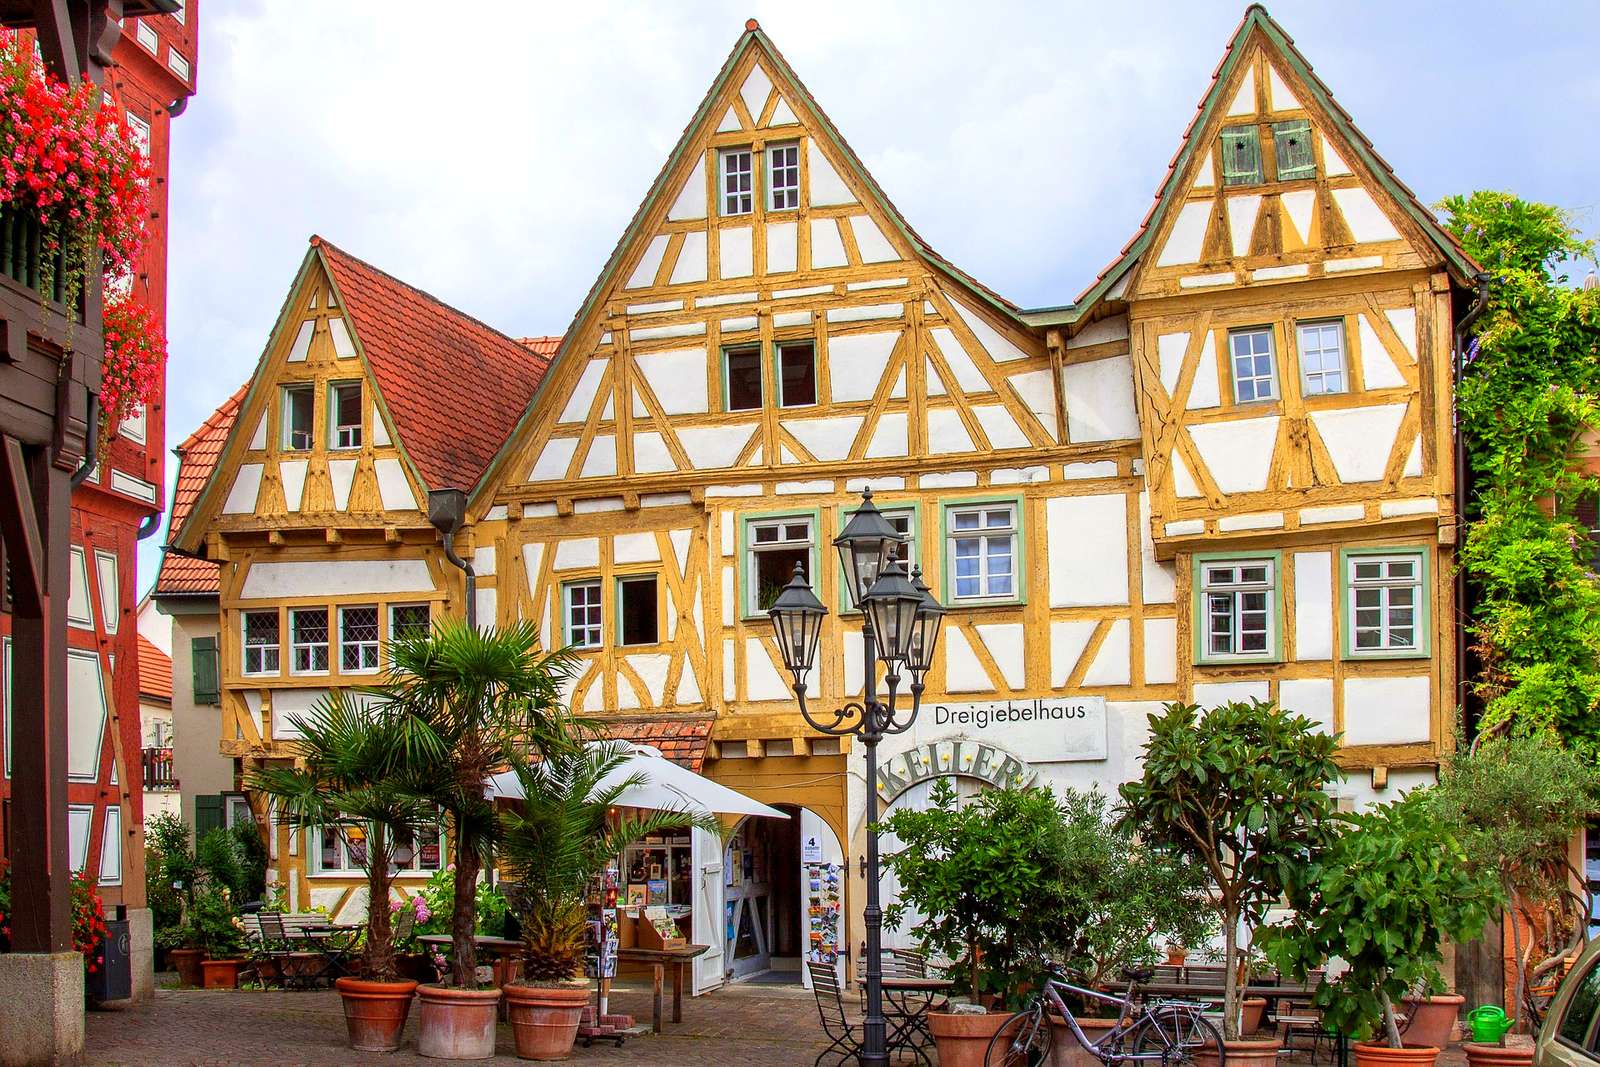 Красивый винный город Безигхайм в Германии пазл онлайн